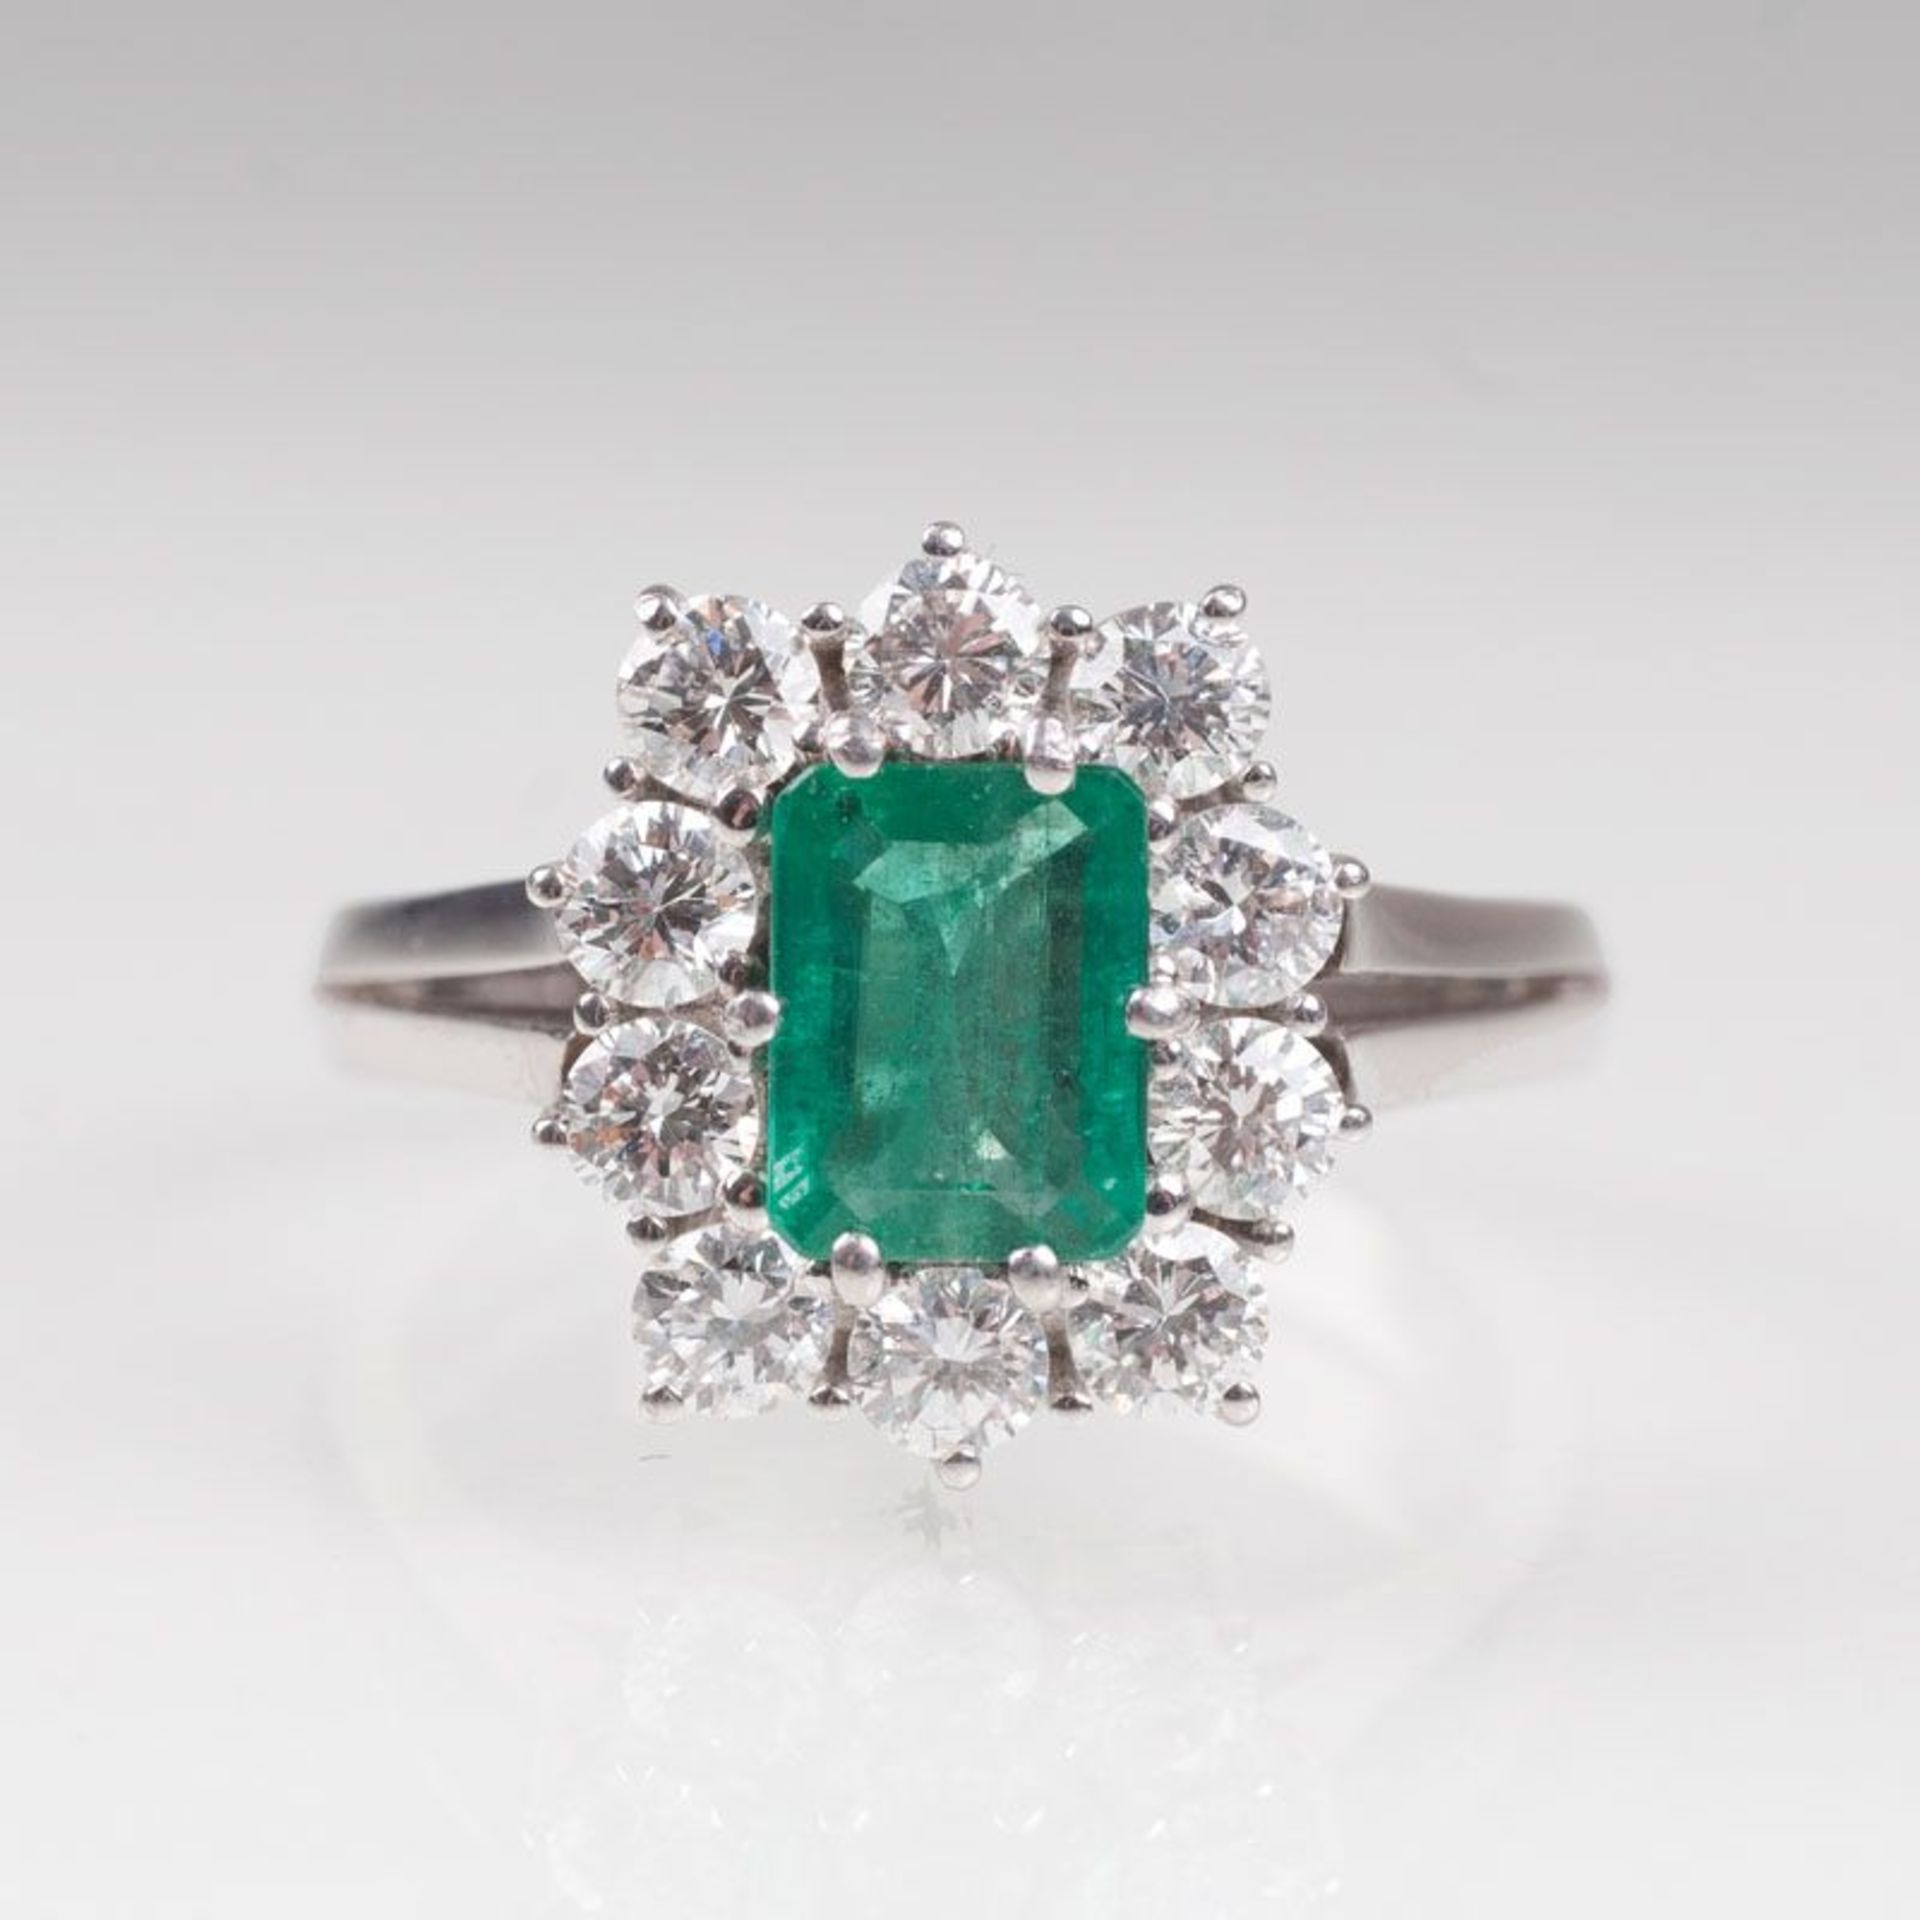 Smaragd-Brillant-Ring von Juwelier Rüschenbeck 18 kt. WG, gest., Juwelierszeichen 'R'. Der Smaragd